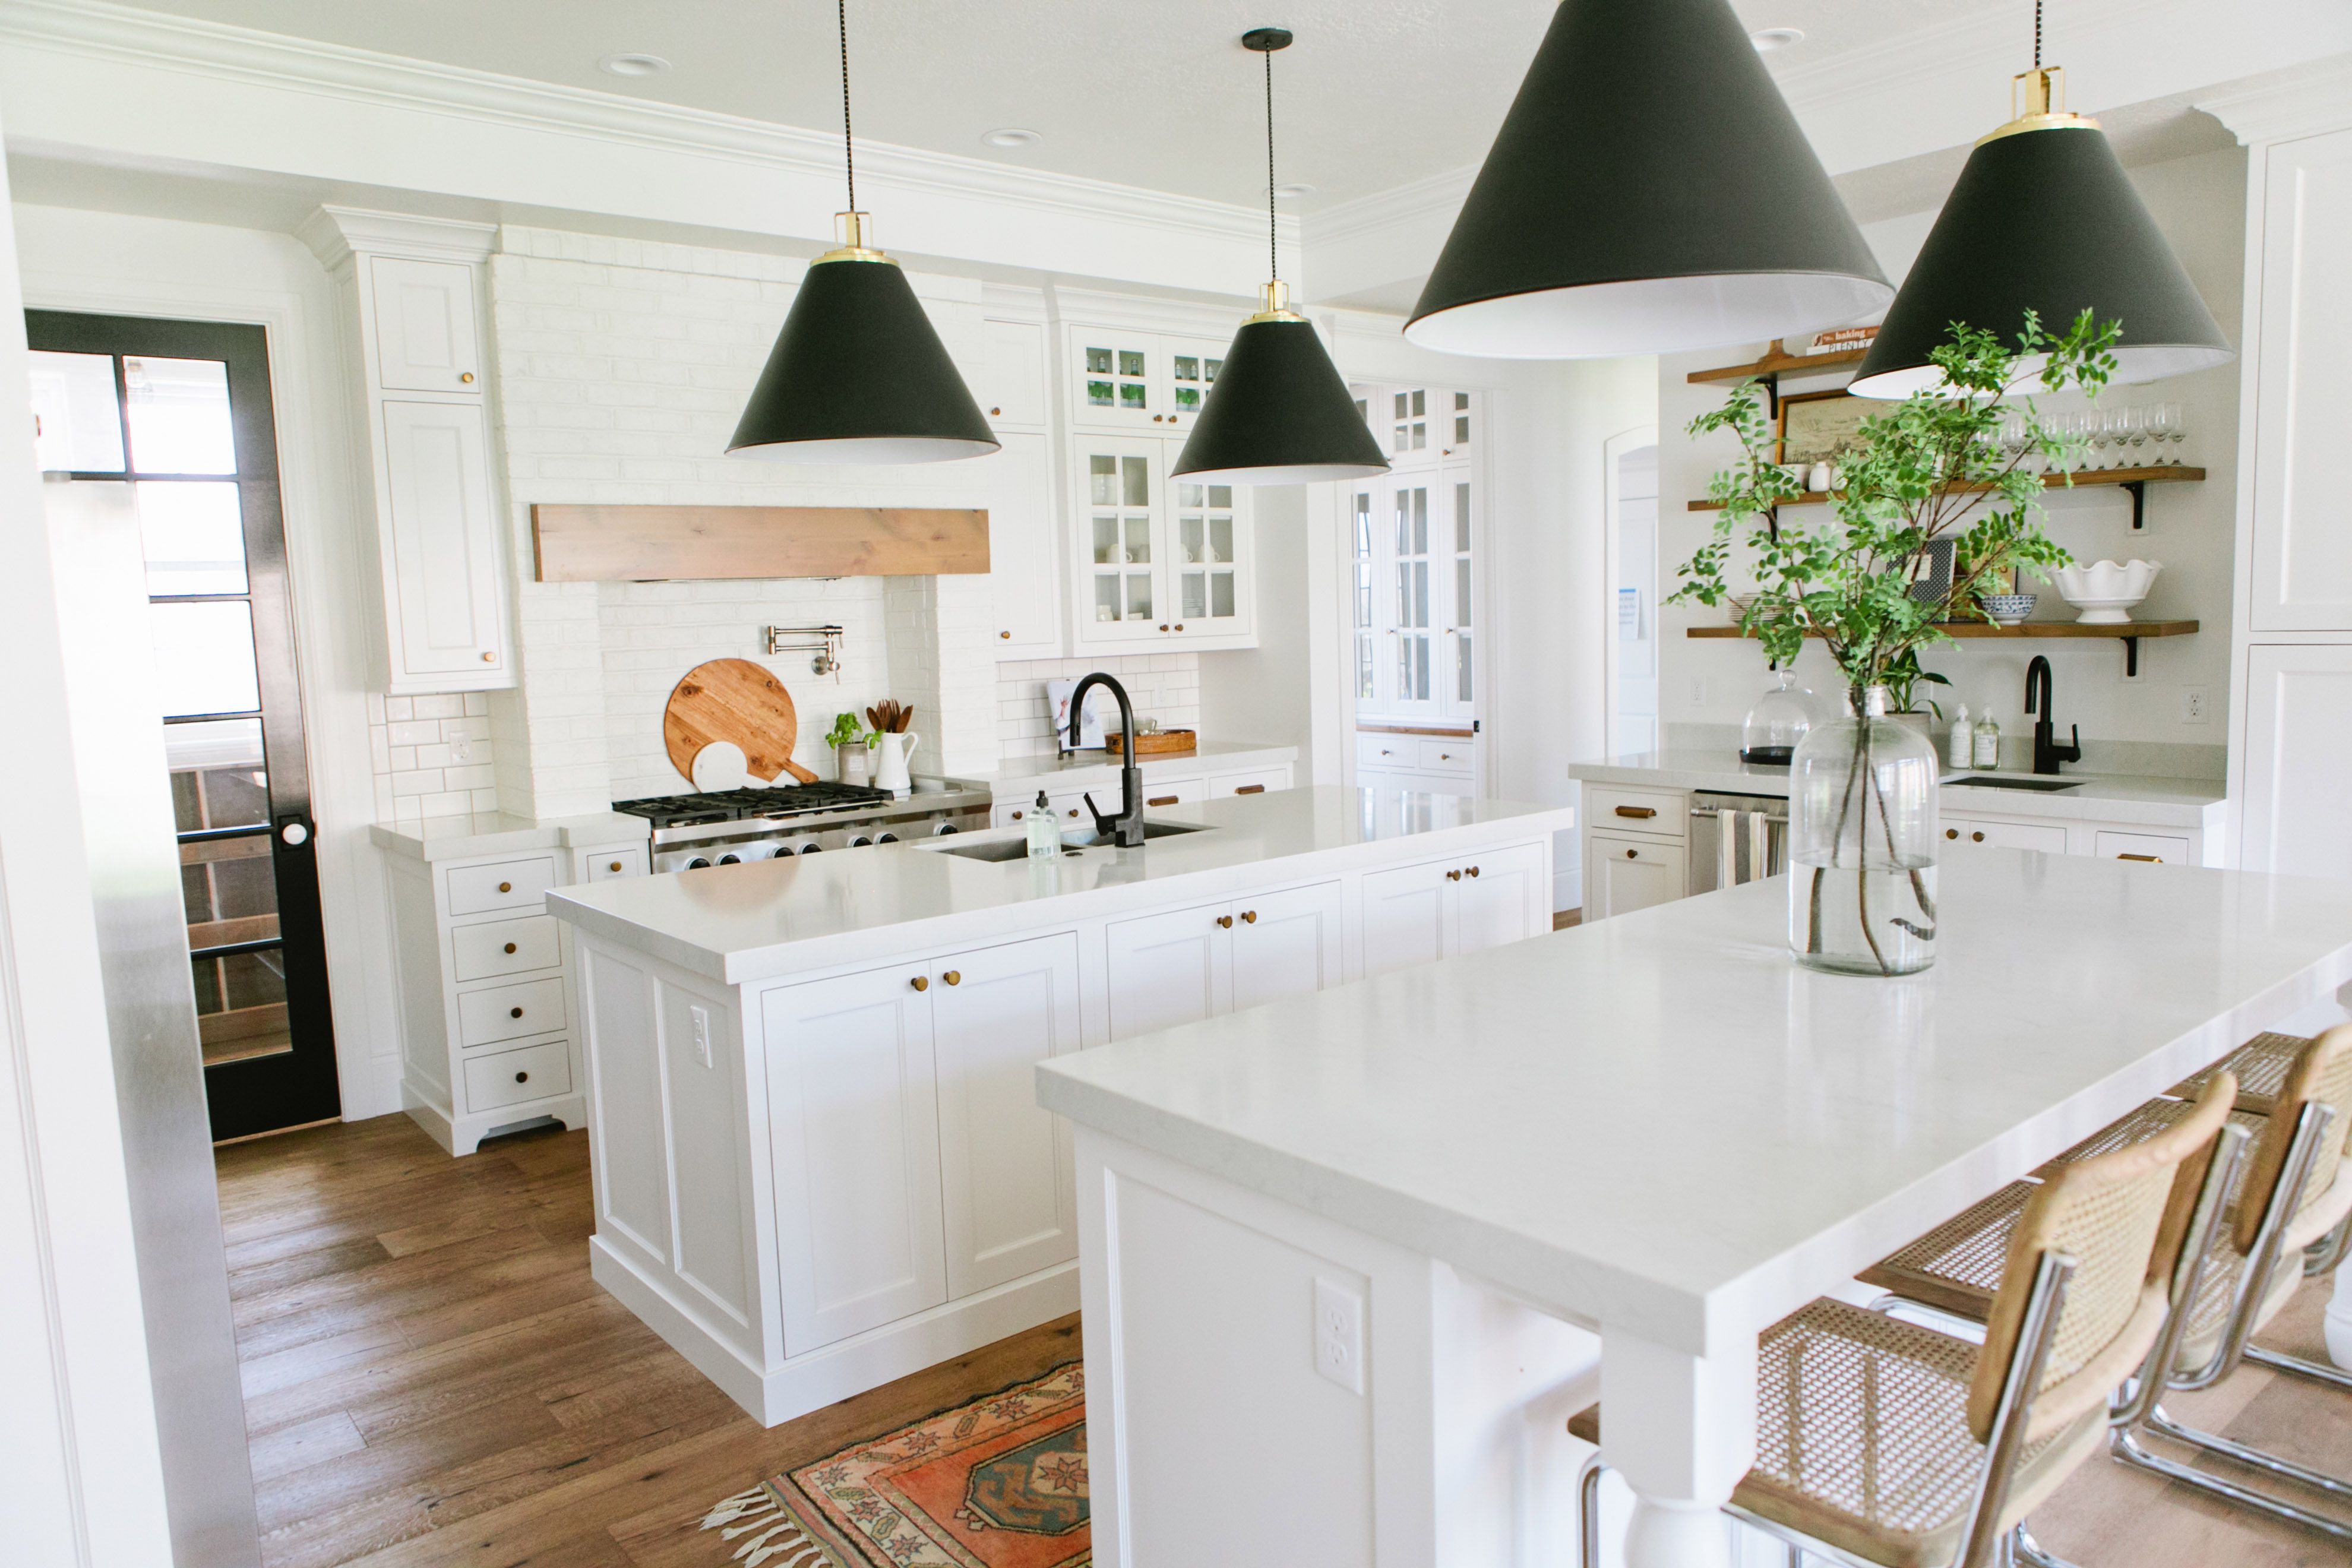 2020 kitchen trend white kitchen cabinet